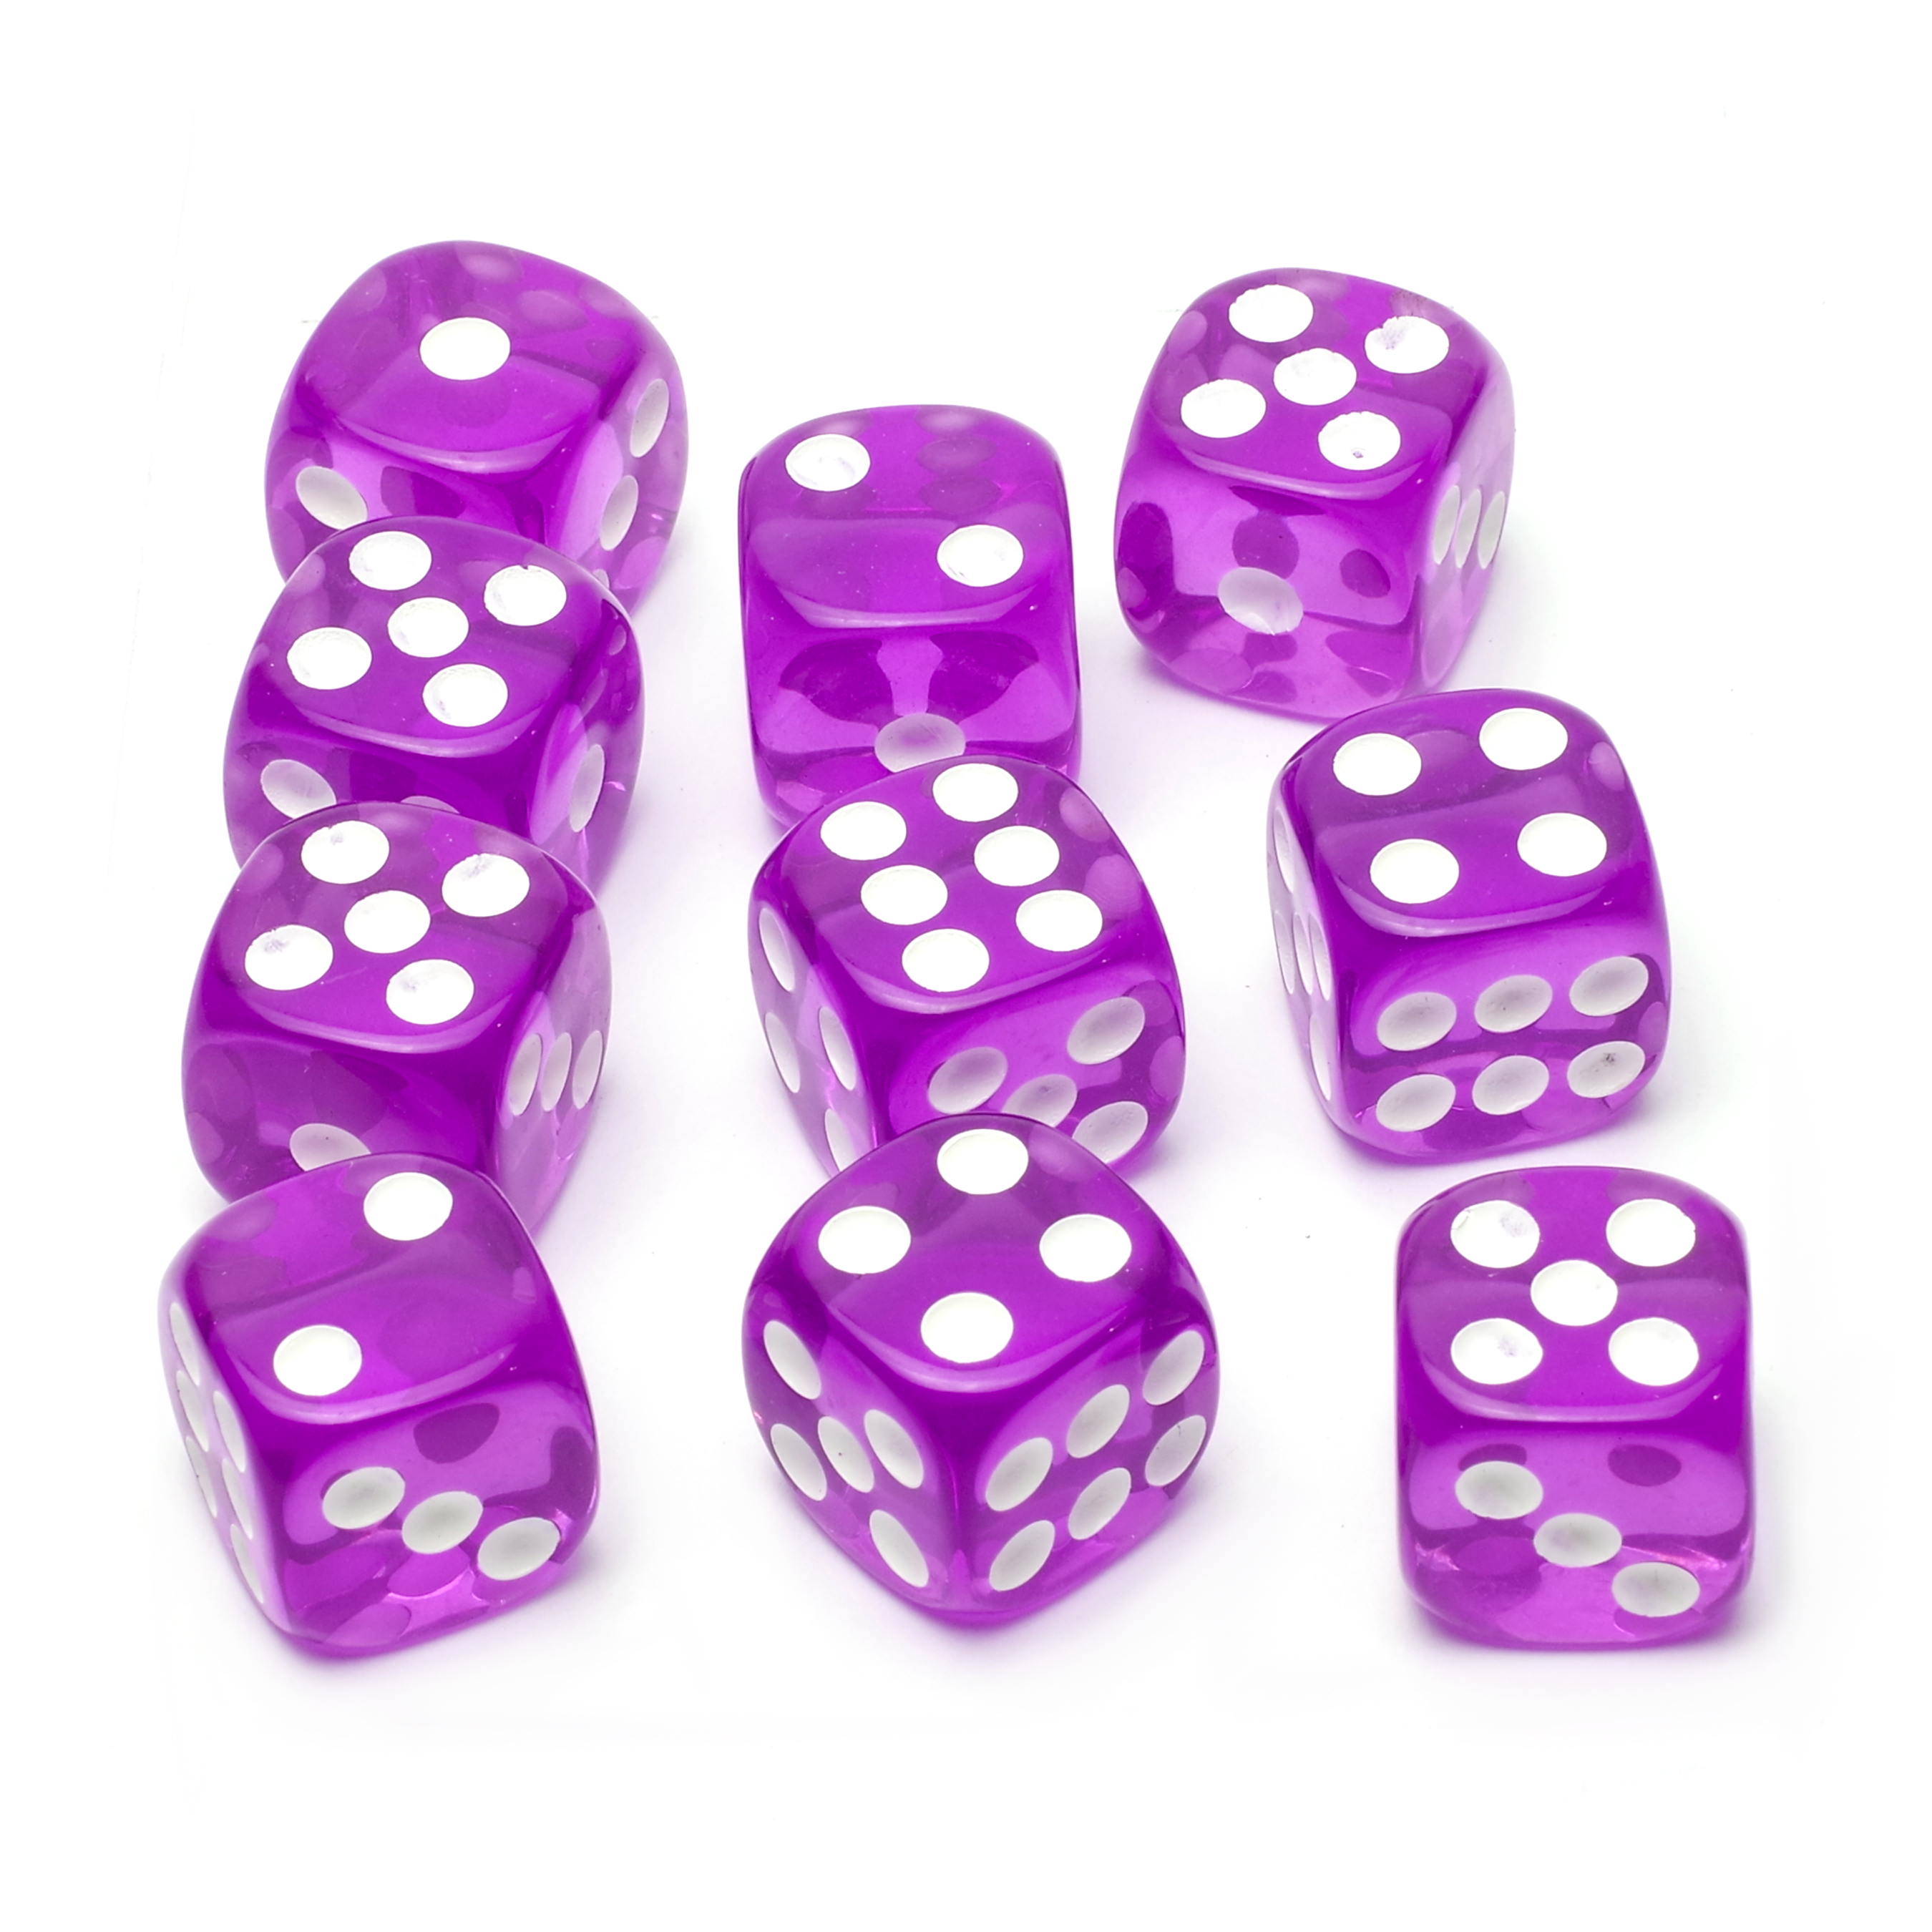 Набор кубиков STUFF-PRO d6, 10 шт, 16мм, прозрачные, фиолетовый набор игральных кубиков pandora box studio простые d6 16мм 12 шт голубой